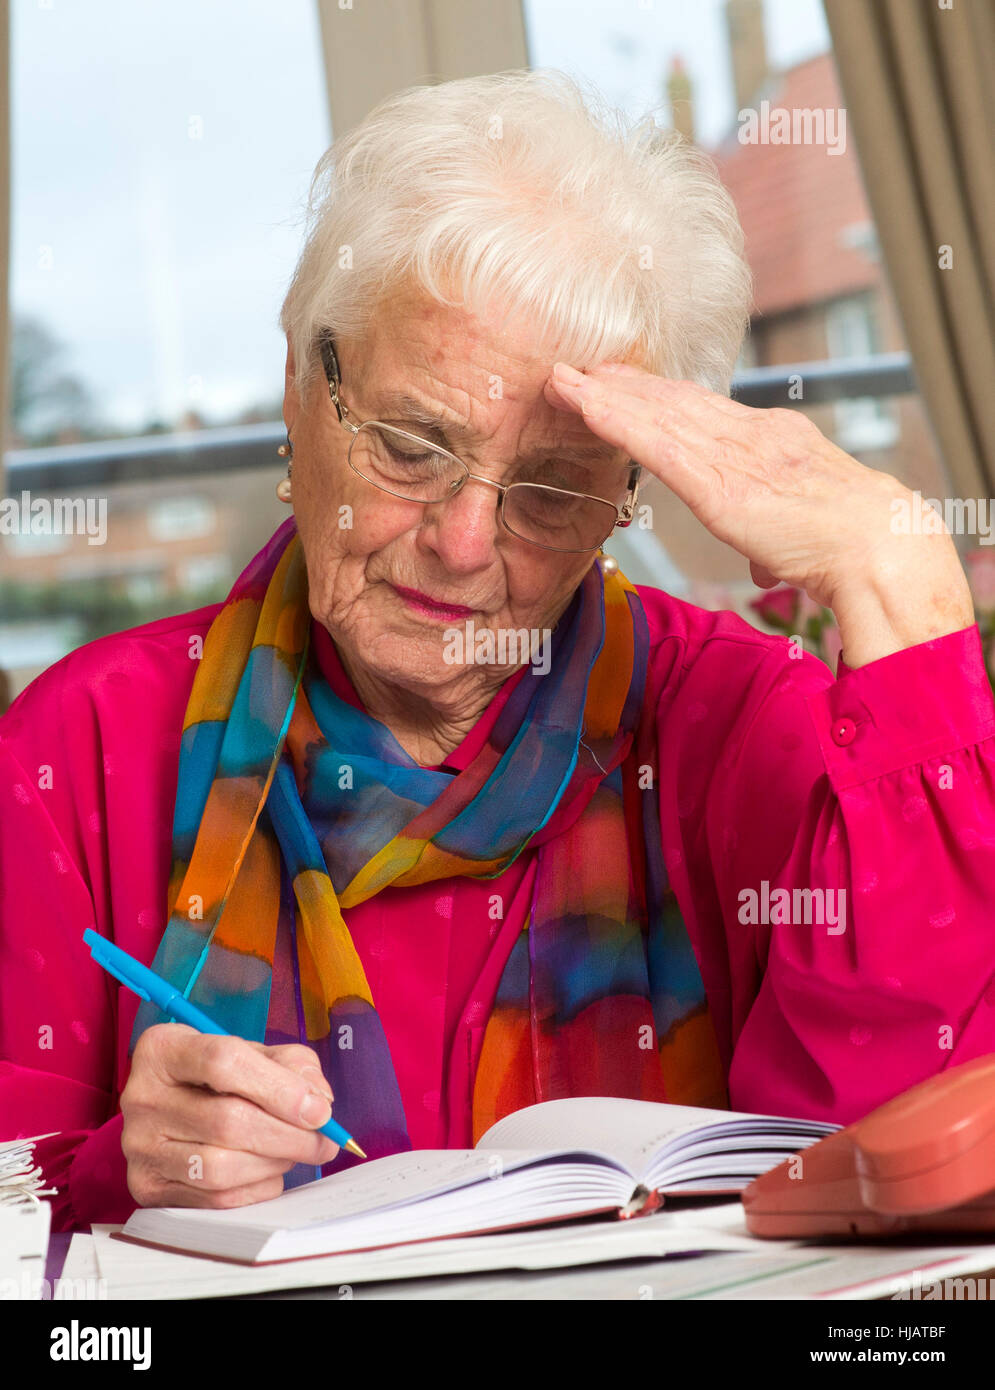 Une dame plus âgée organiser son outgoings mensuels à son domicile dans un effort pour économiser de l'argent Banque D'Images